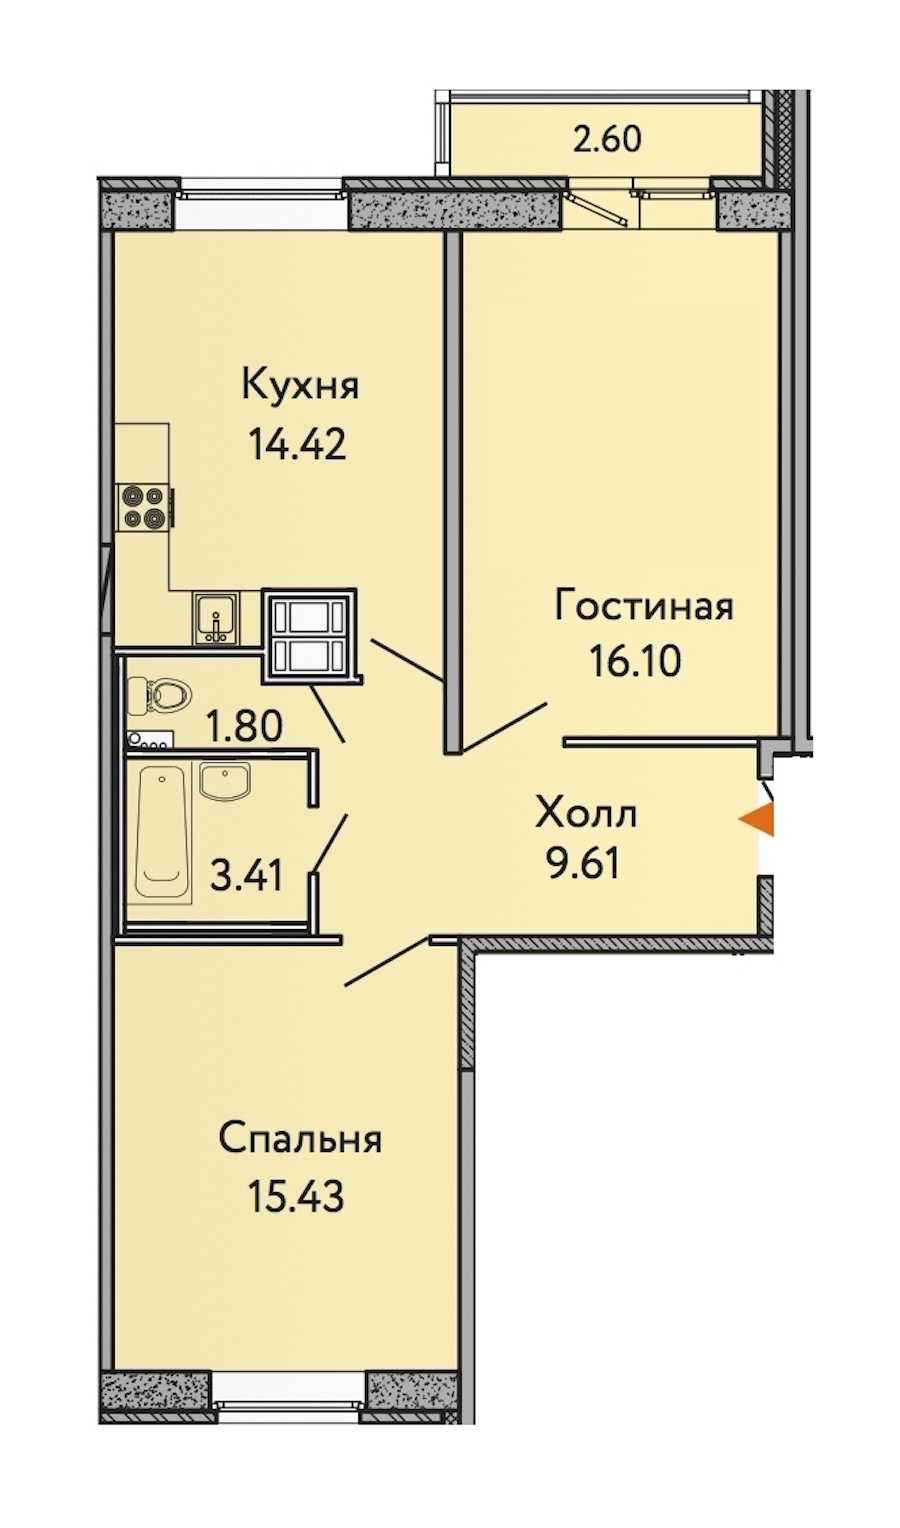 Двухкомнатная квартира в : площадь 61.55 м2 , этаж: 7 – купить в Санкт-Петербурге